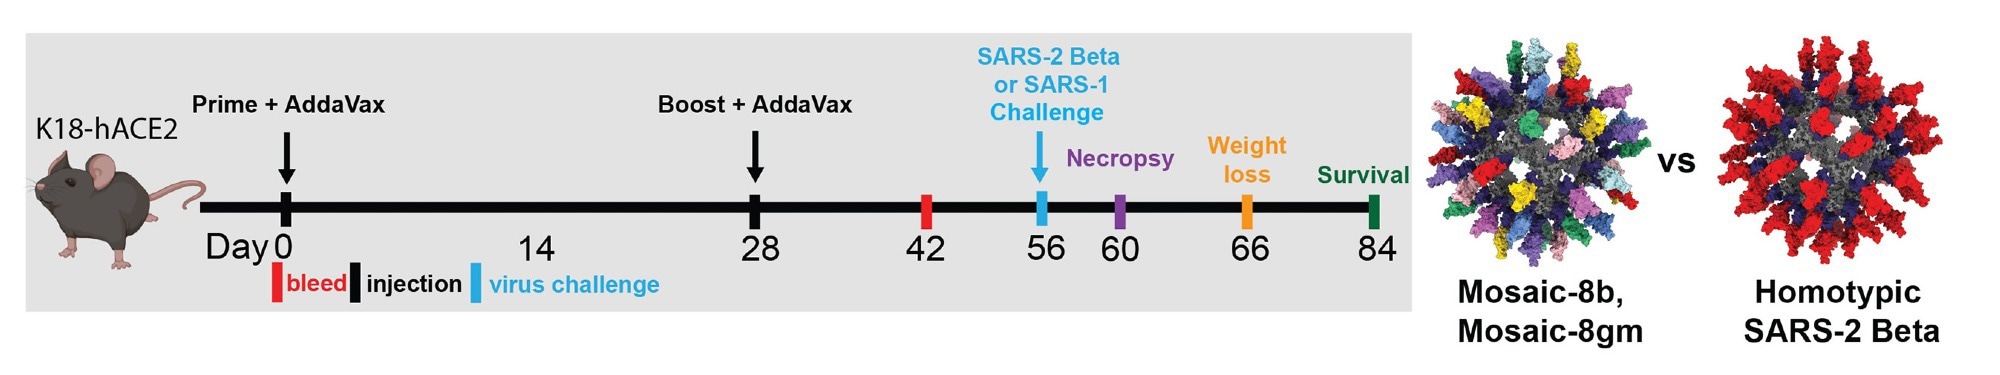 Les immunisations avec Mosaic-8b et homotypique SARS-2 Beta RBD-mi3 ont induit des anticorps neutralisants et contraignants chez des souris K18.  (A) Gauche : calendrier de vaccination.  Des souris K18-hACE2 ont été immunisées avec 5 µg (équivalents RBD) de mosaïque-8b, mosaïque-8 g, SARS-2 bêta homotypique ou l'équivalent molaire de nanoparticules SpyCatcher003-mi3 non conjuguées.  Droite : Modèles structuraux de nanoparticules mosaïque-8 et homotypiques RBD-mi3 construits avec PDB 7SC1 (RBD), PDB 4MLI (SpyCatcher) et PDB 7B3Y (mi3).